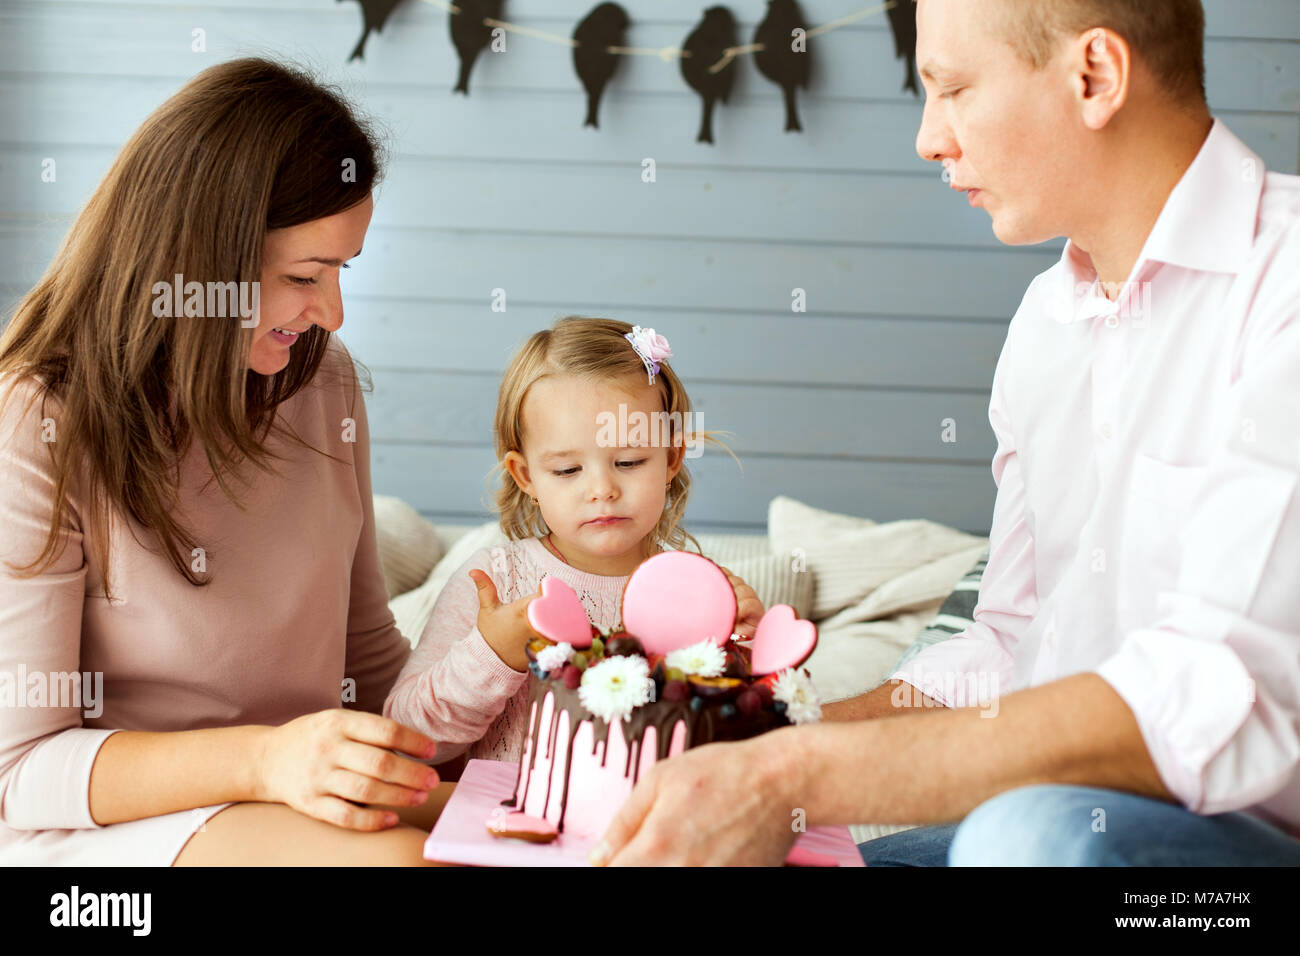 Les parents d'une petite fille. Girl essaie le gâteau avec son doigt Banque D'Images